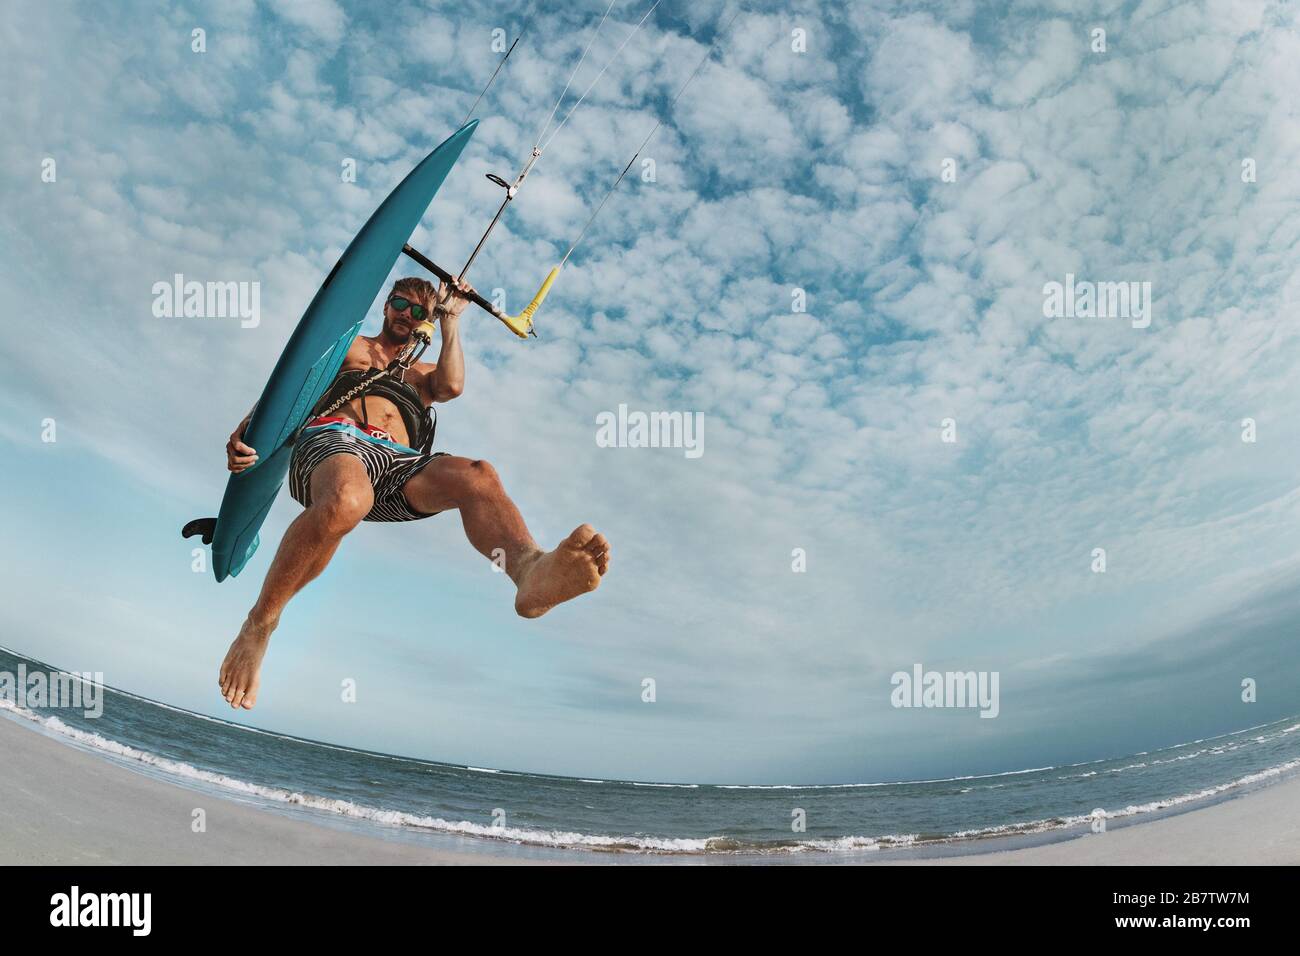 L'homme kite surfeur saute avec wakeboard à la plage de la mer Banque D'Images